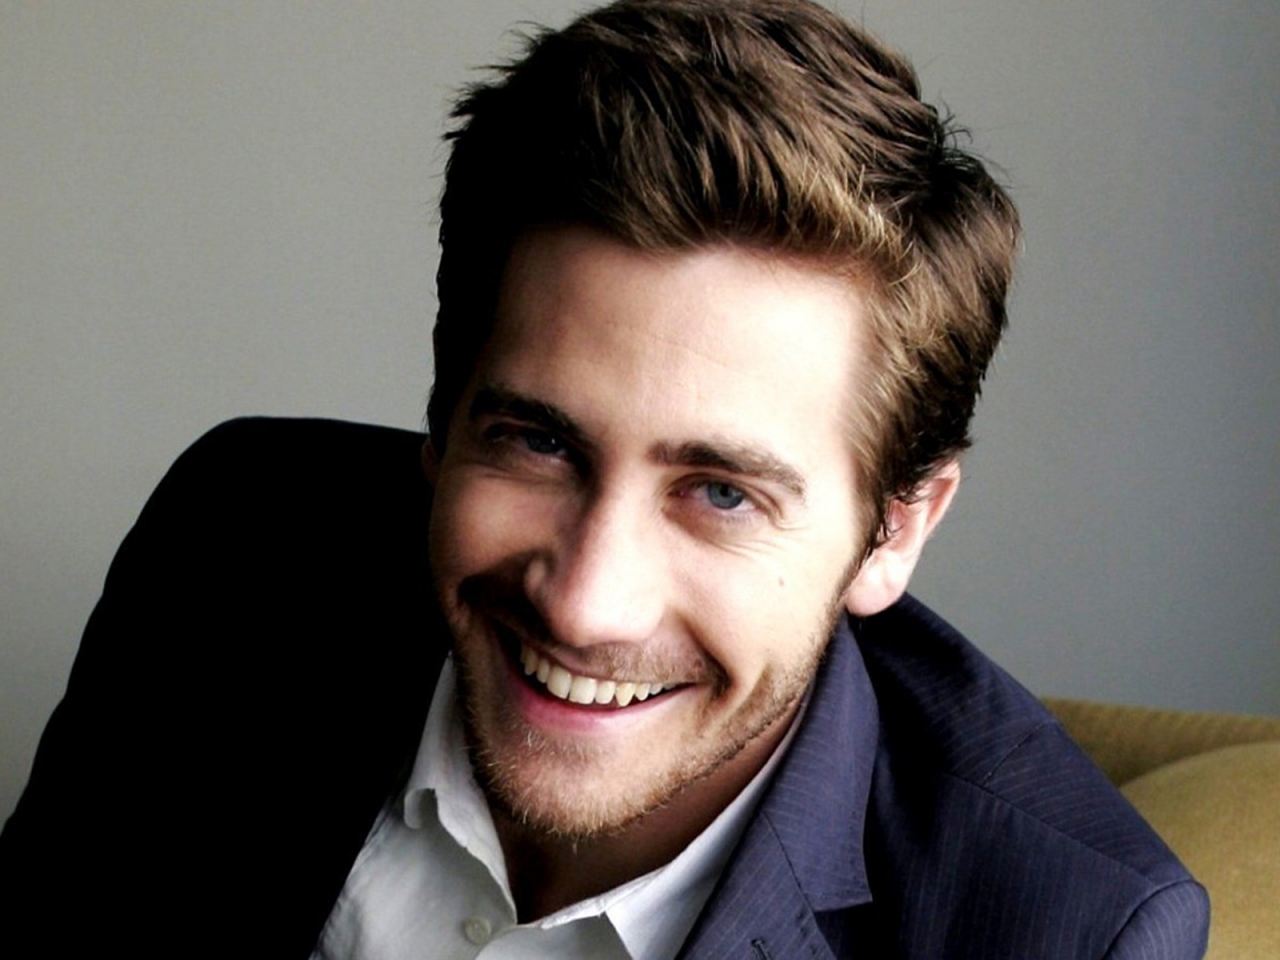 Jake Gyllenhaal Smile for 1280 x 960 resolution